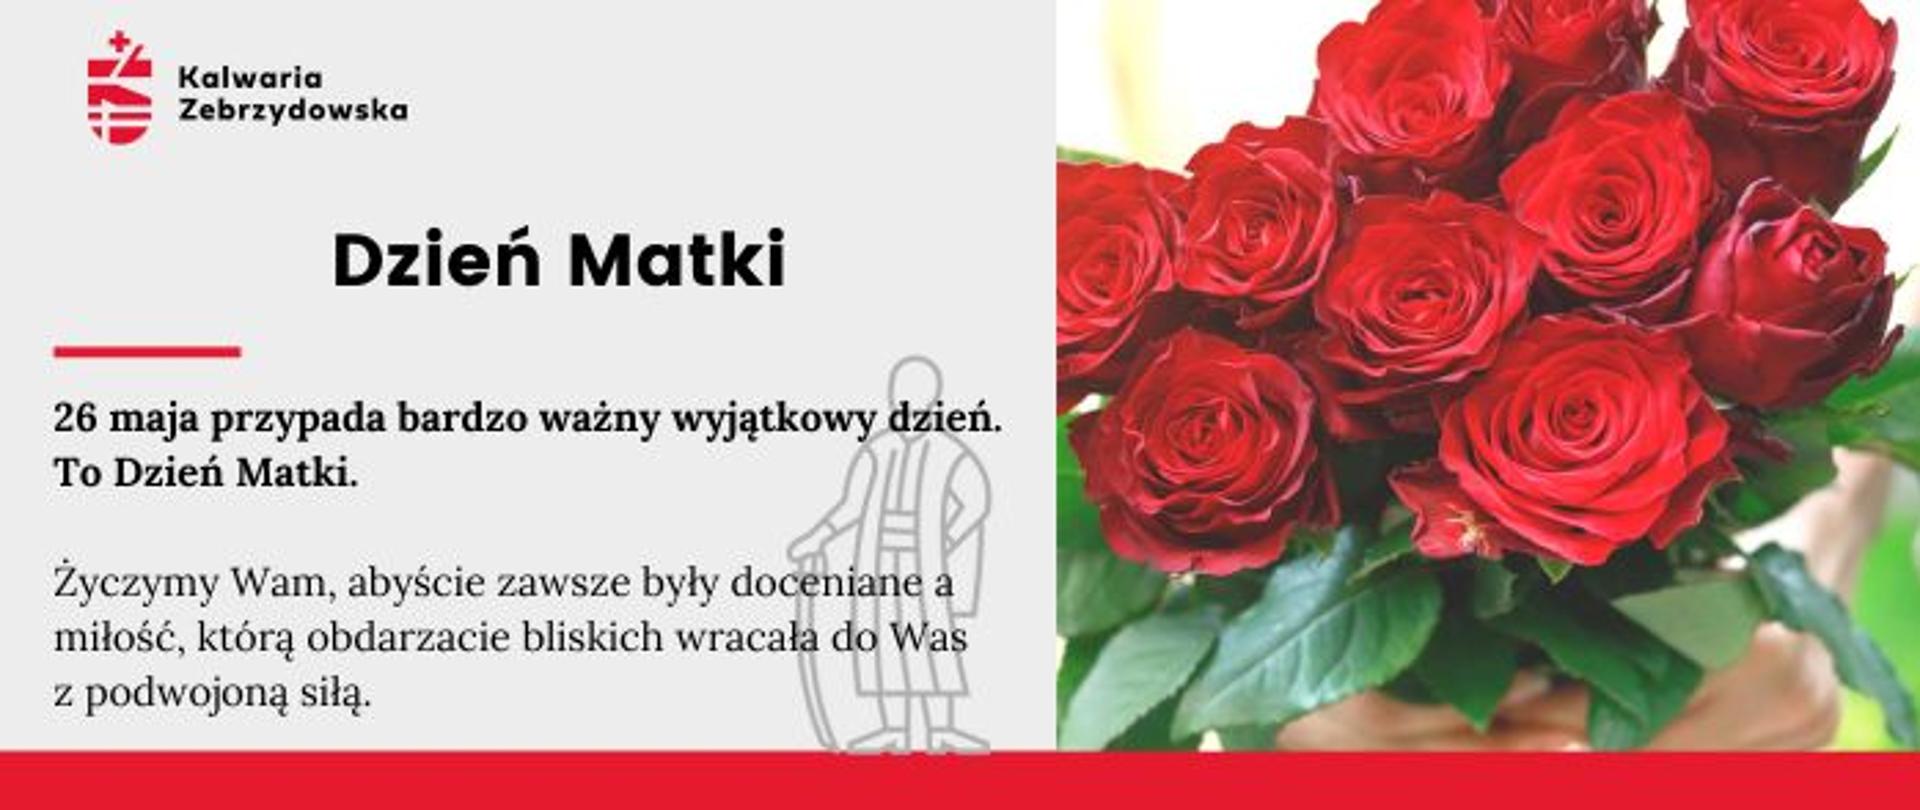 Plansza z życzeniami na Dzień Matki - po prawej bukiet czerwonych róż